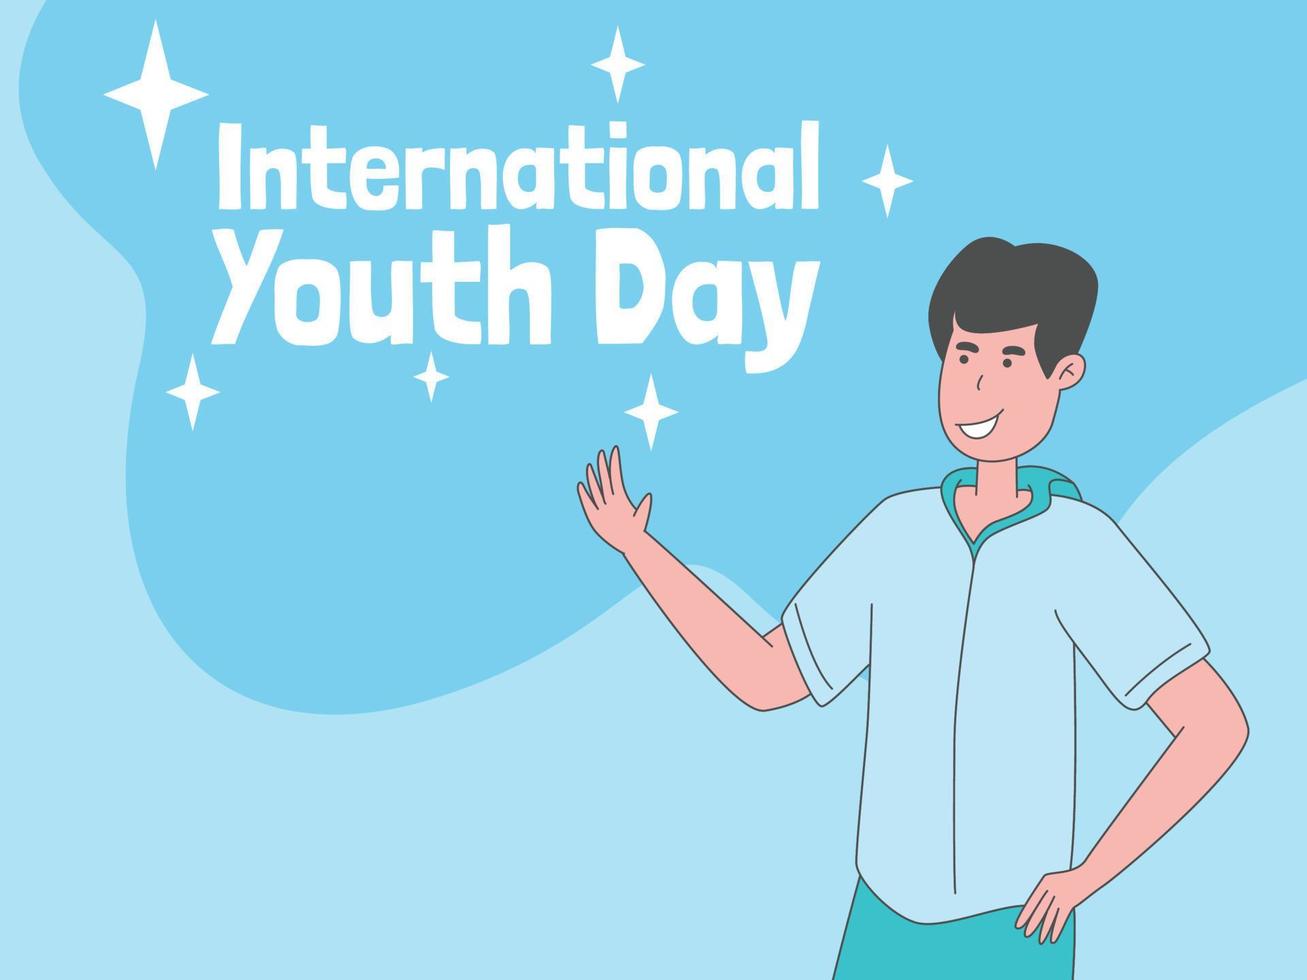 día internacional de la juventud, banner de fondo de ilustración de juventud feliz vector